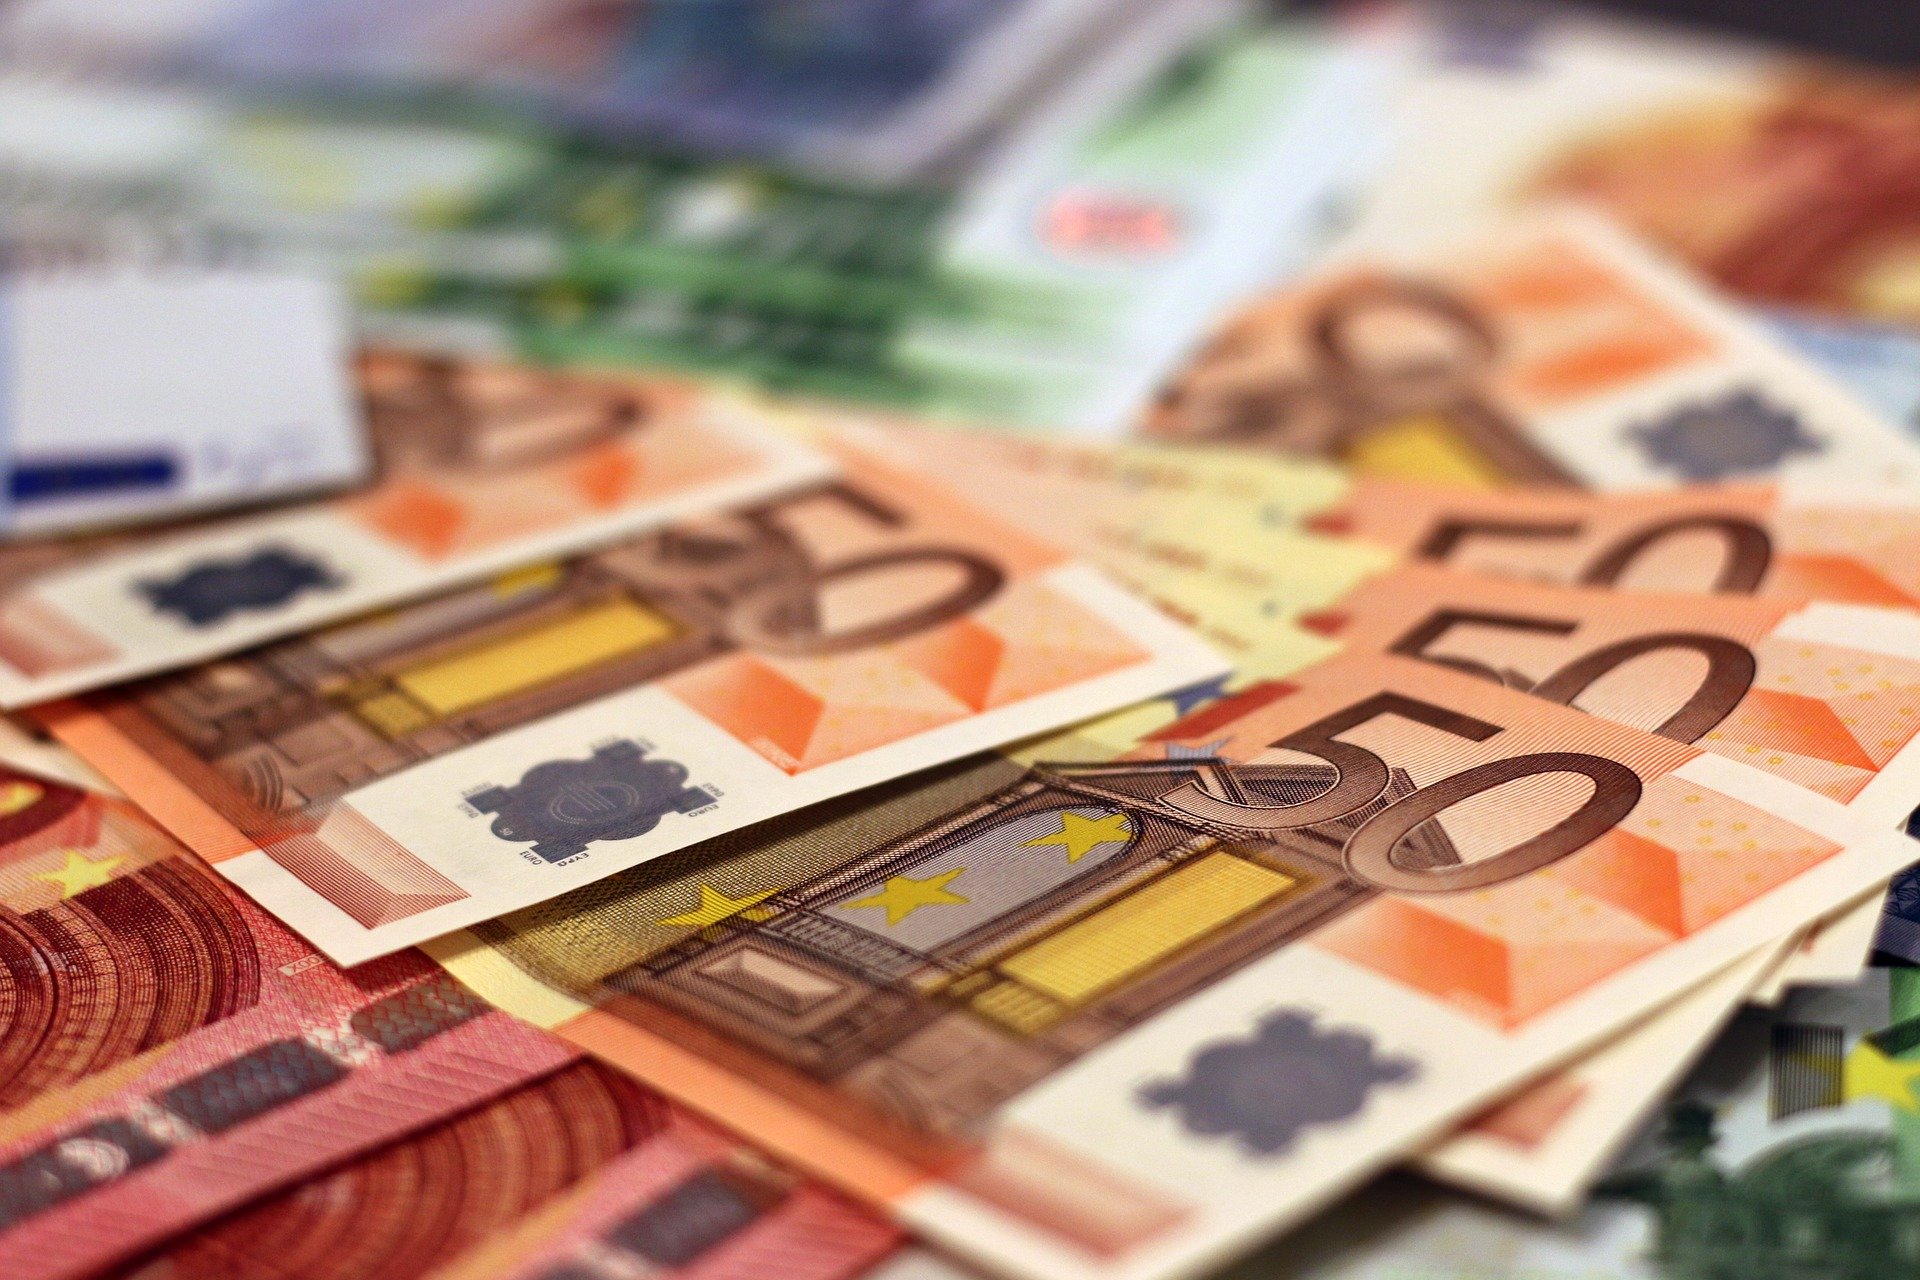 Geld Euro